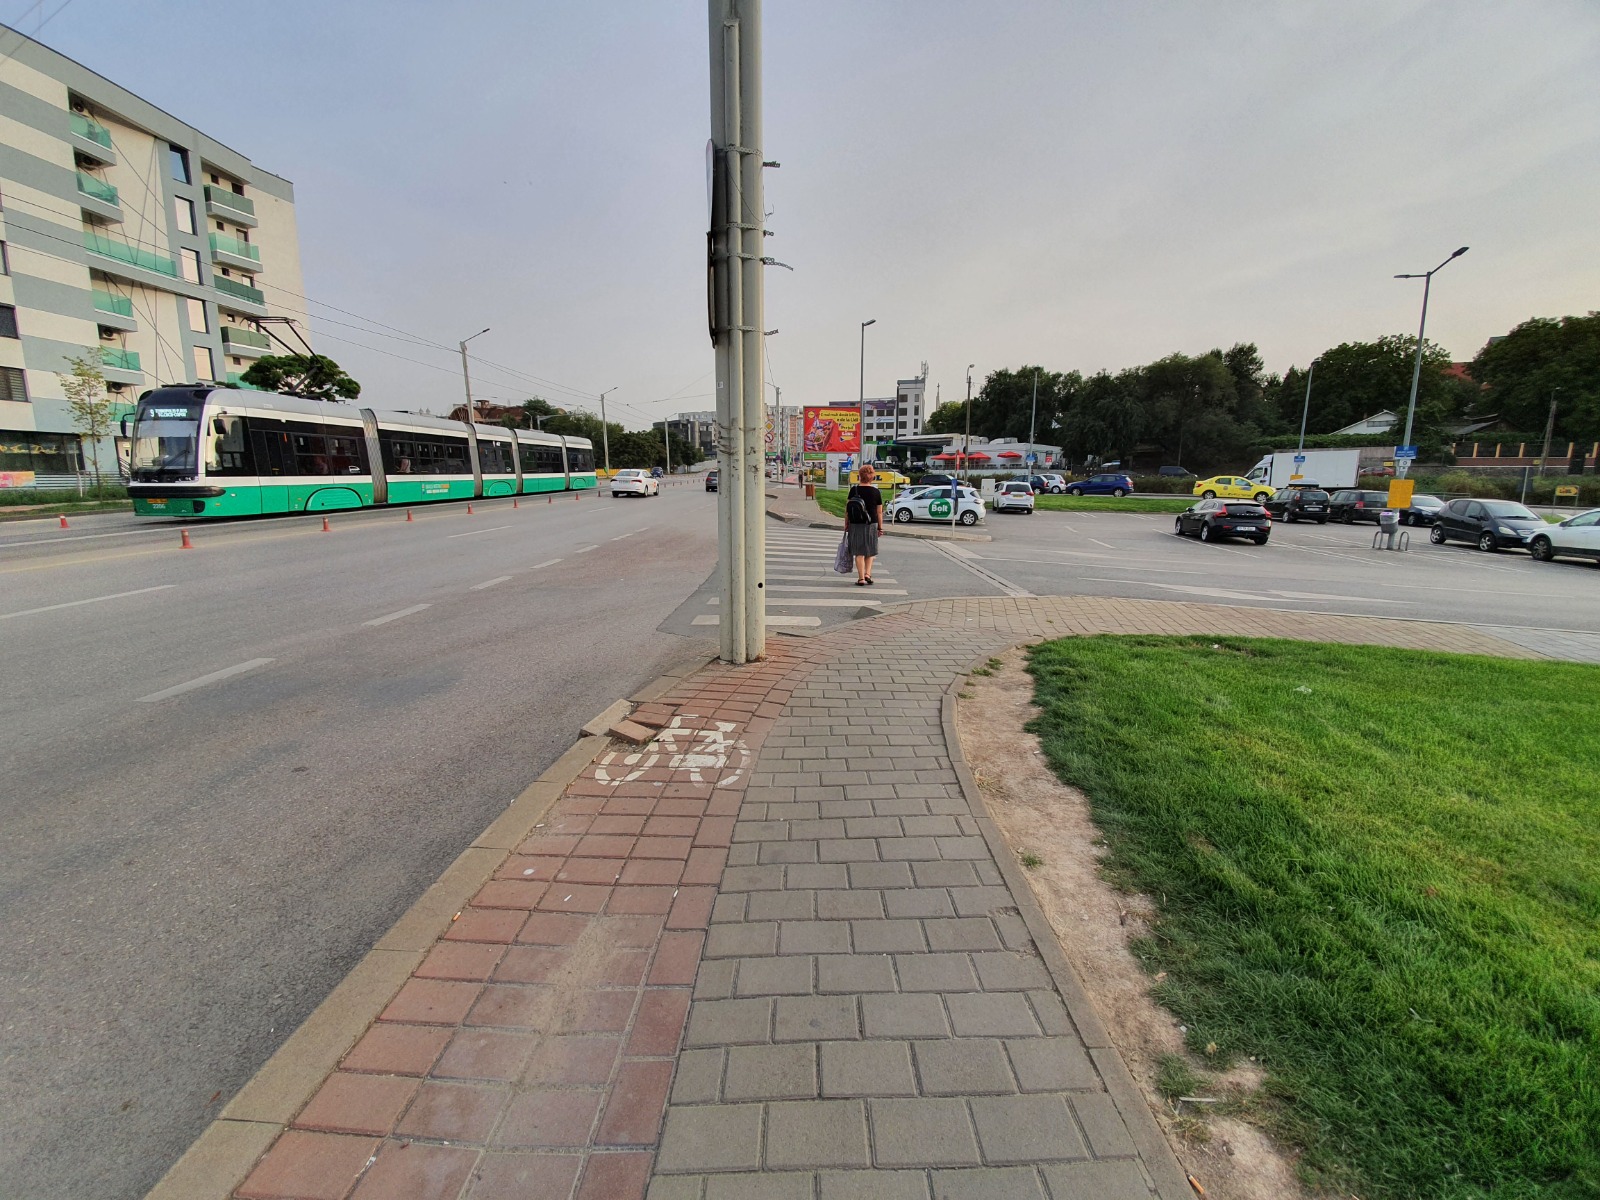 Inspectoratului de Poliție Județean Iași ne-a comunicat că au realizat verificări constatând deficiențe privind semnalizarea, precum și obstacole ce fac impracticabile pistele și care pun în pericol siguranța rutieră a bicicliștilor și pietonilor